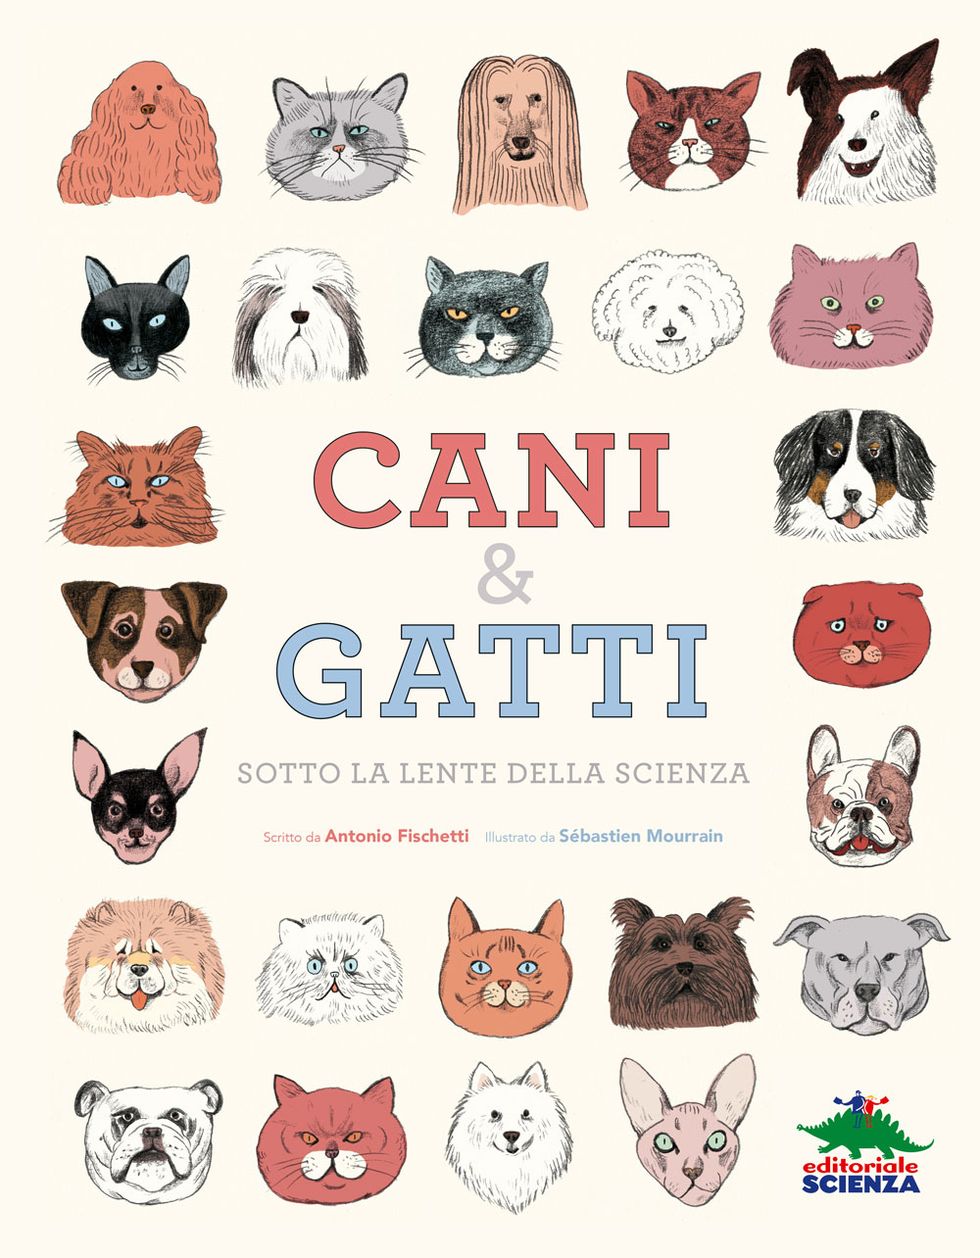 cani-e-gatti-editoriale-scienza-libro